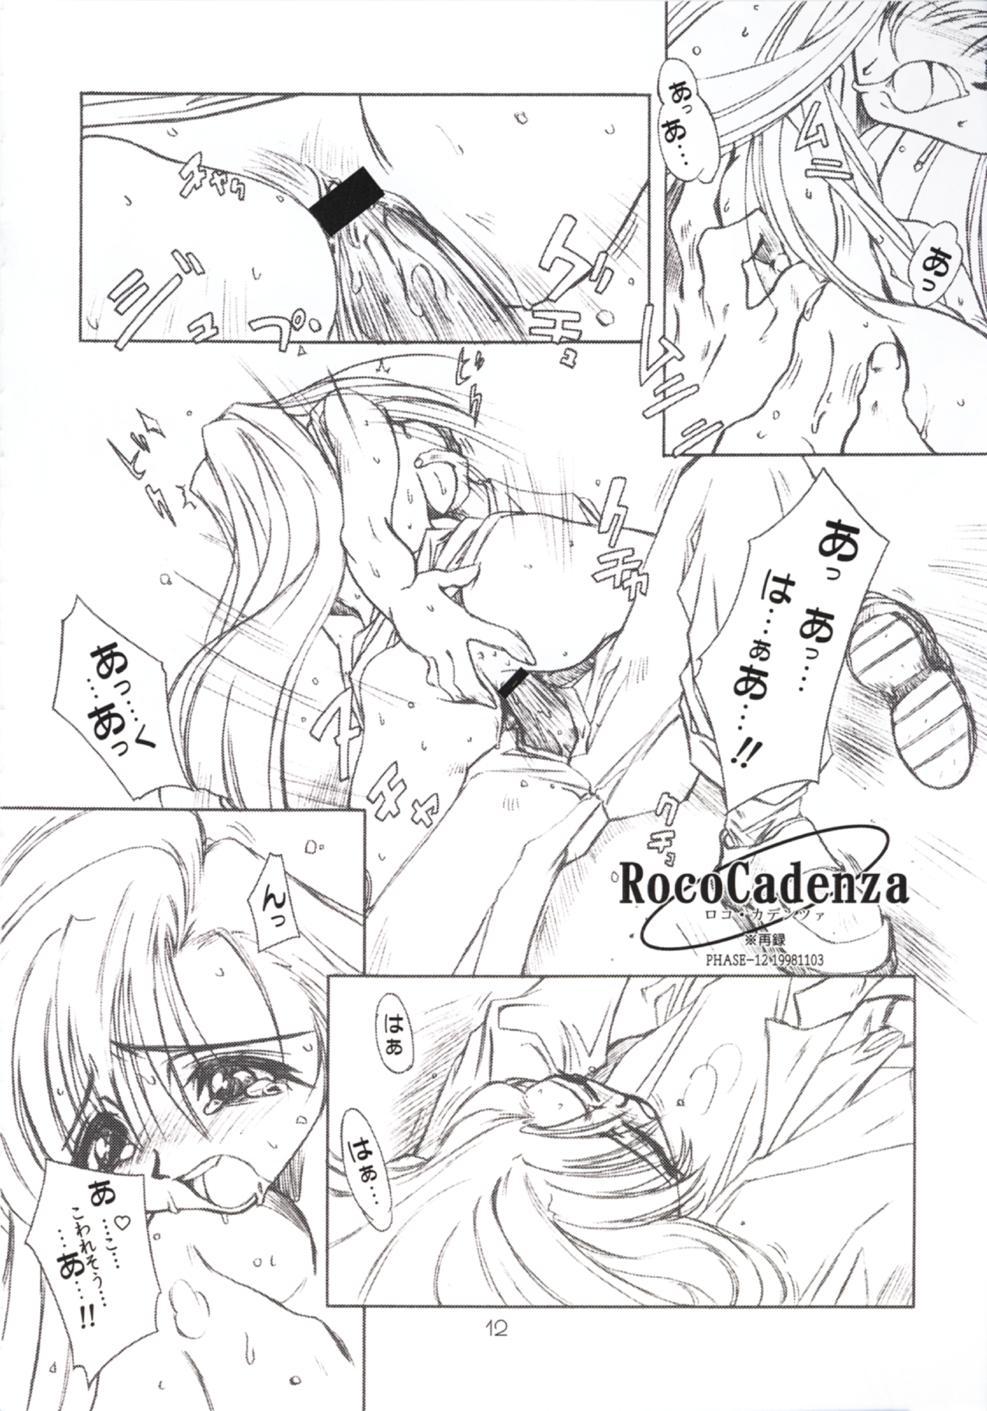 Gay Facial PhantasMagoria - Final fantasy vii Samurai spirits Ojamajo doremi Weird - Page 11